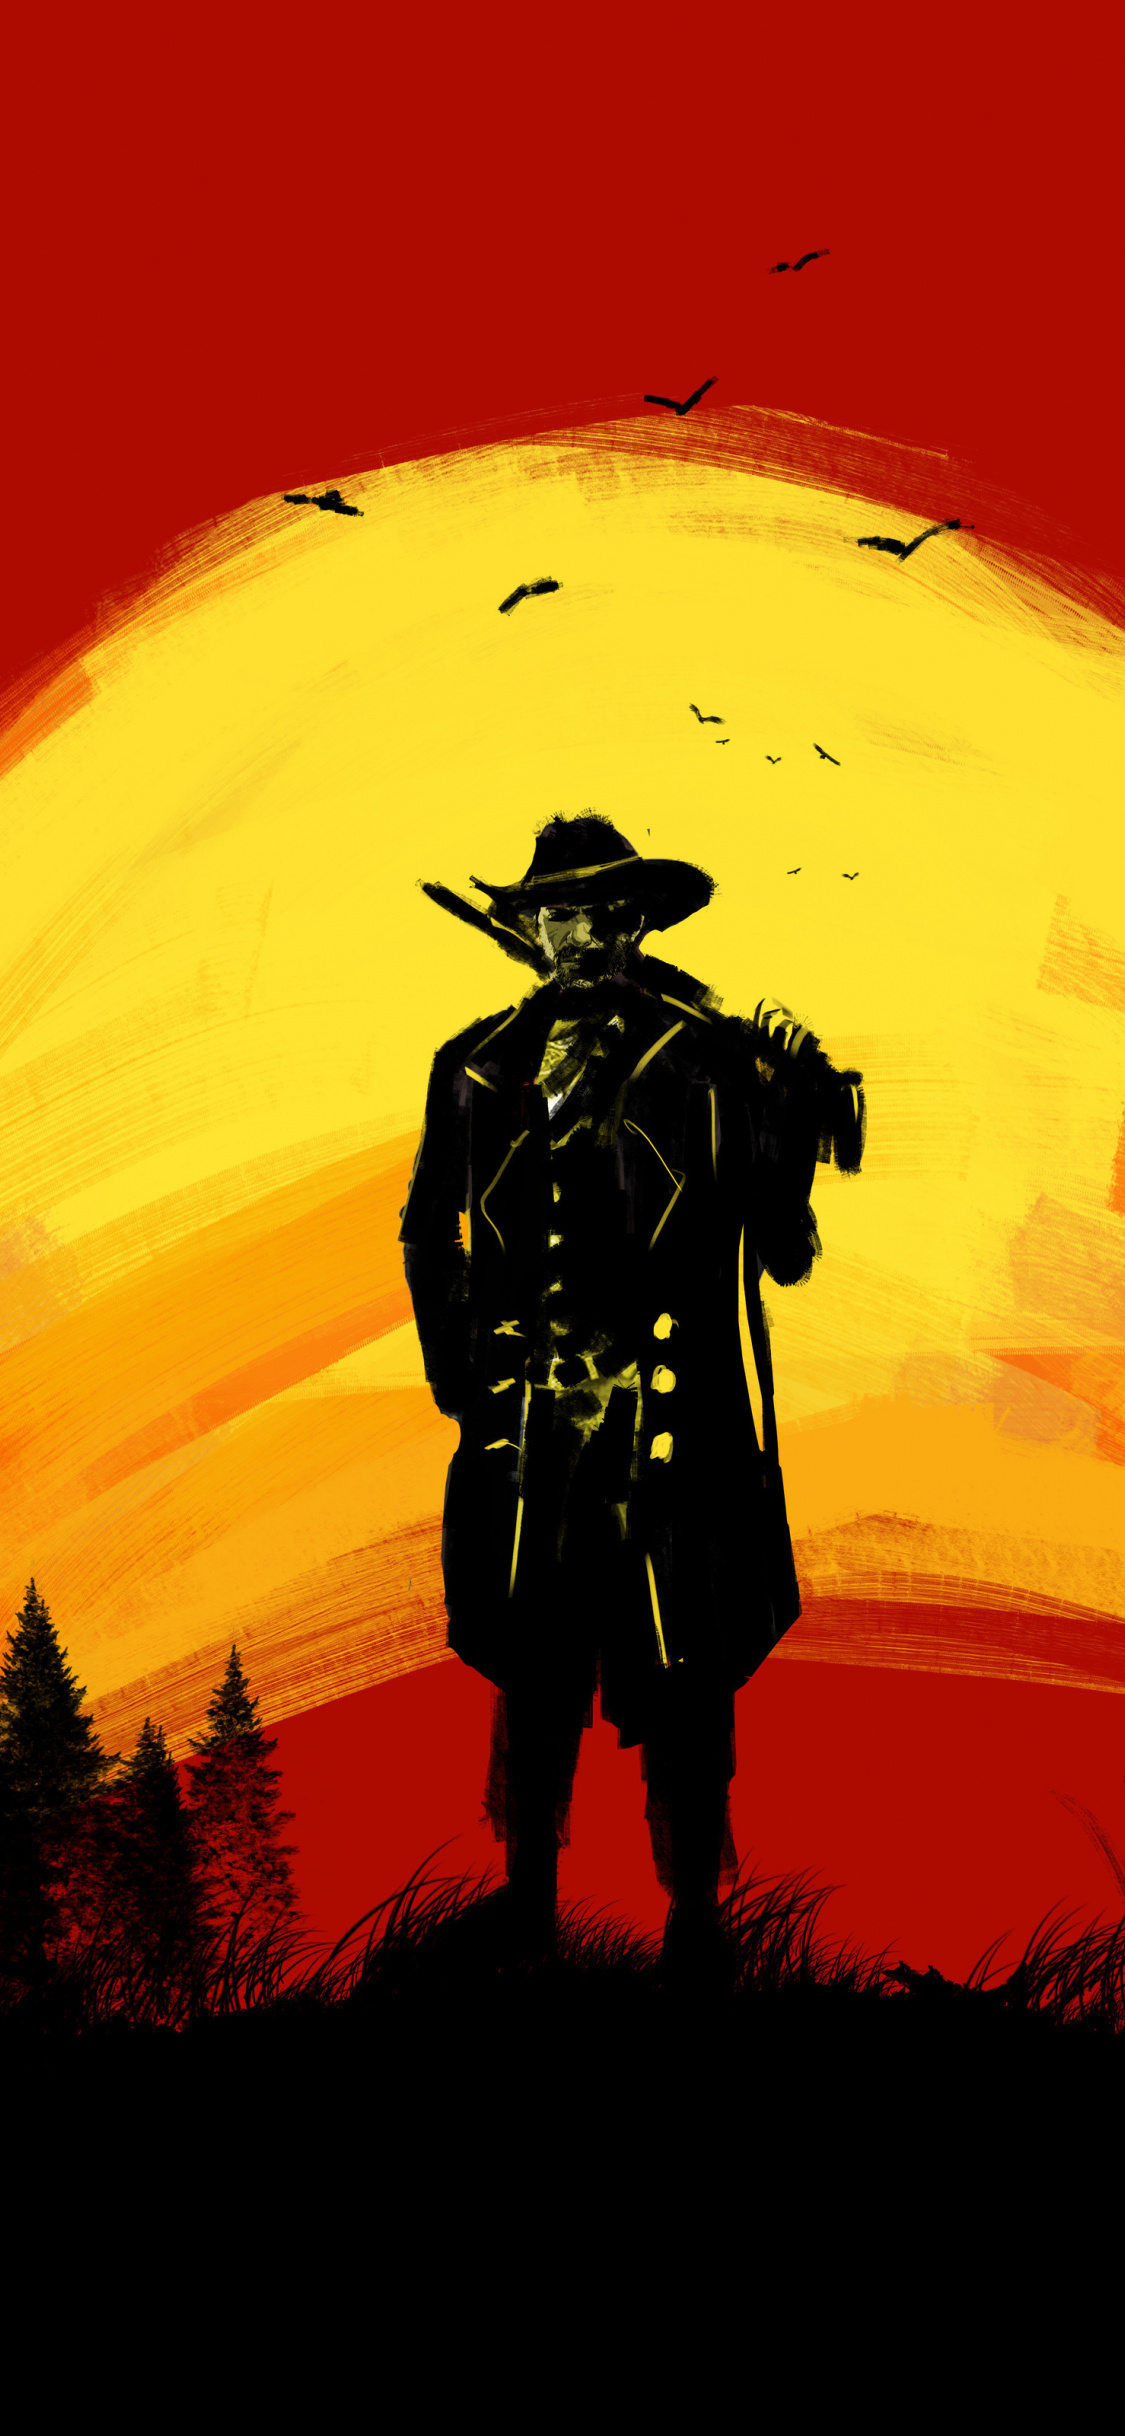 Red Dead Redemption 2, Cowboy, Silhouette, Fan Art, - Red Dead Redemption 2 Wallpaper Android - HD Wallpaper 